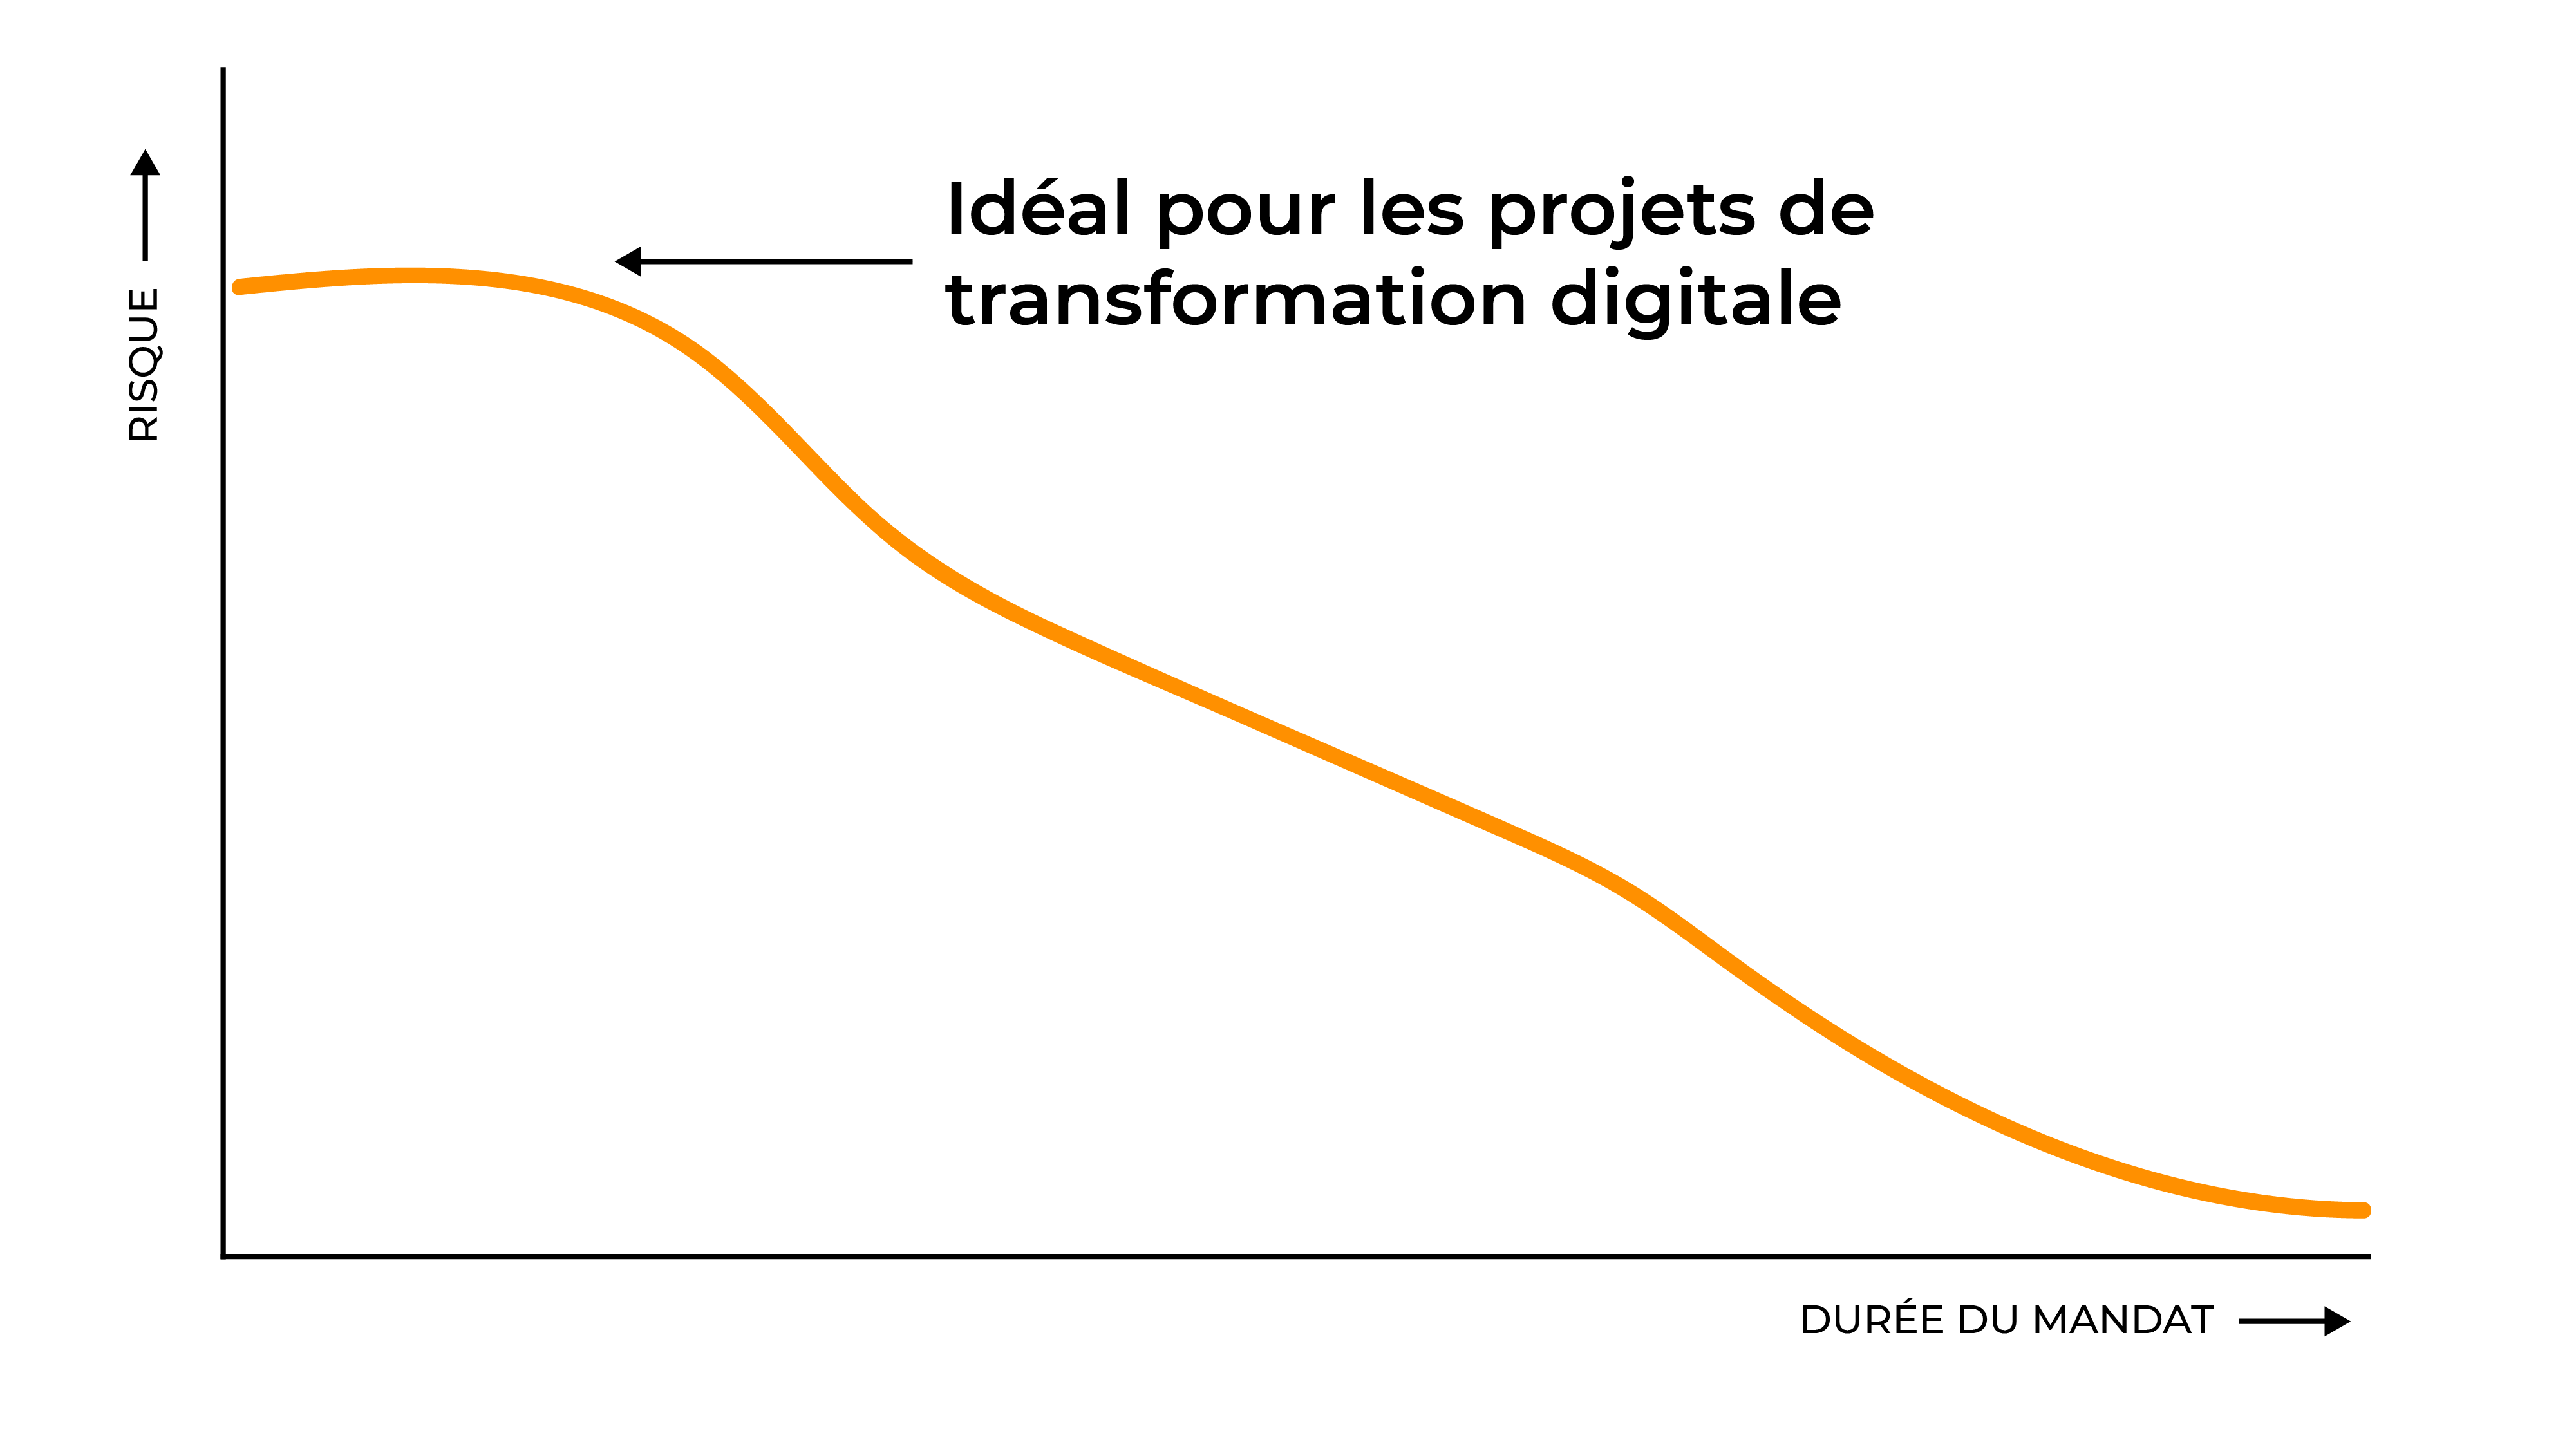 Le moment idéal pour entamer un projet de transformation digitale